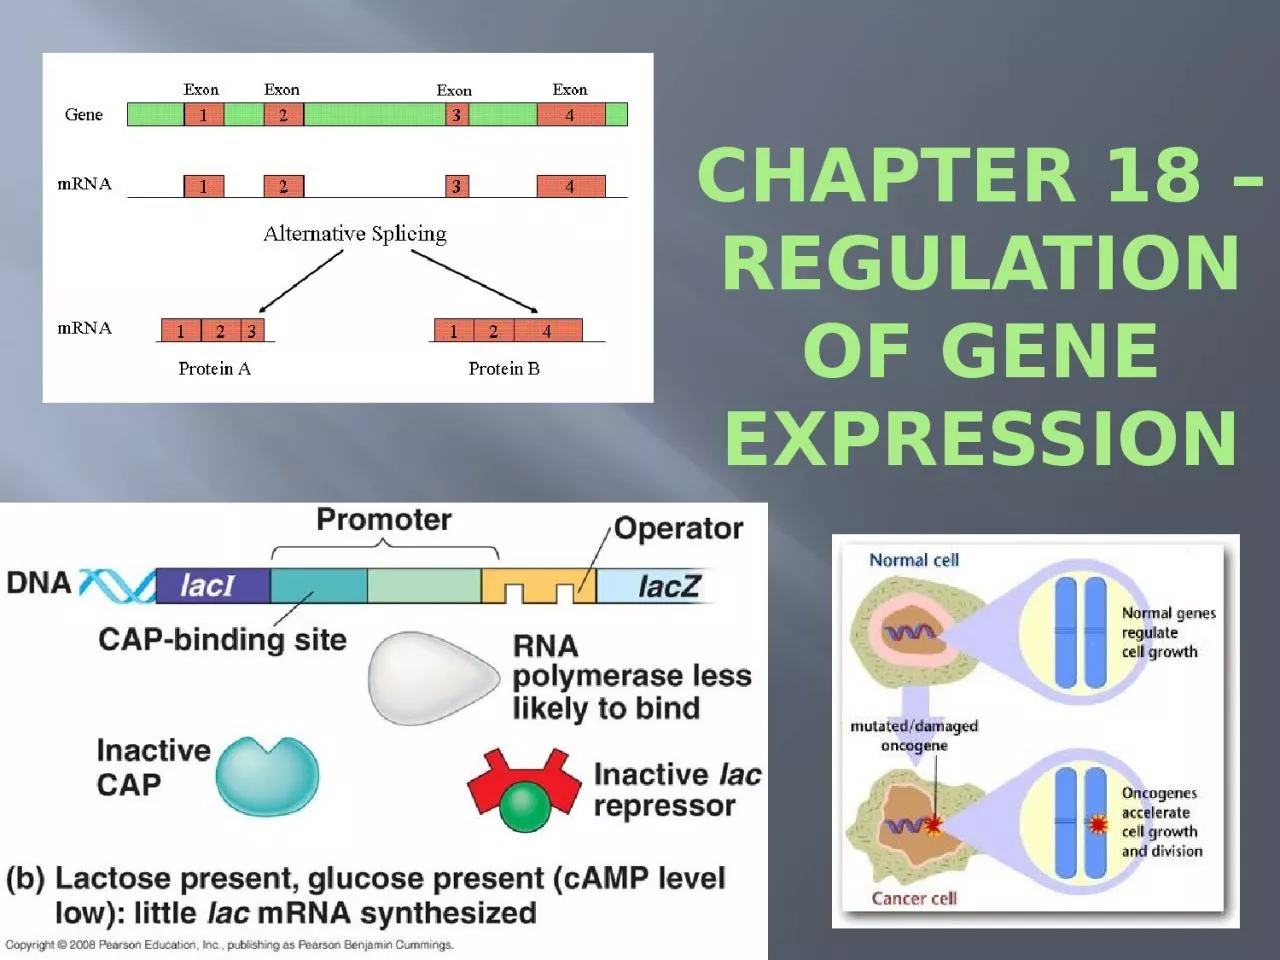 Chapter 18 – Regulation of Gene Expression